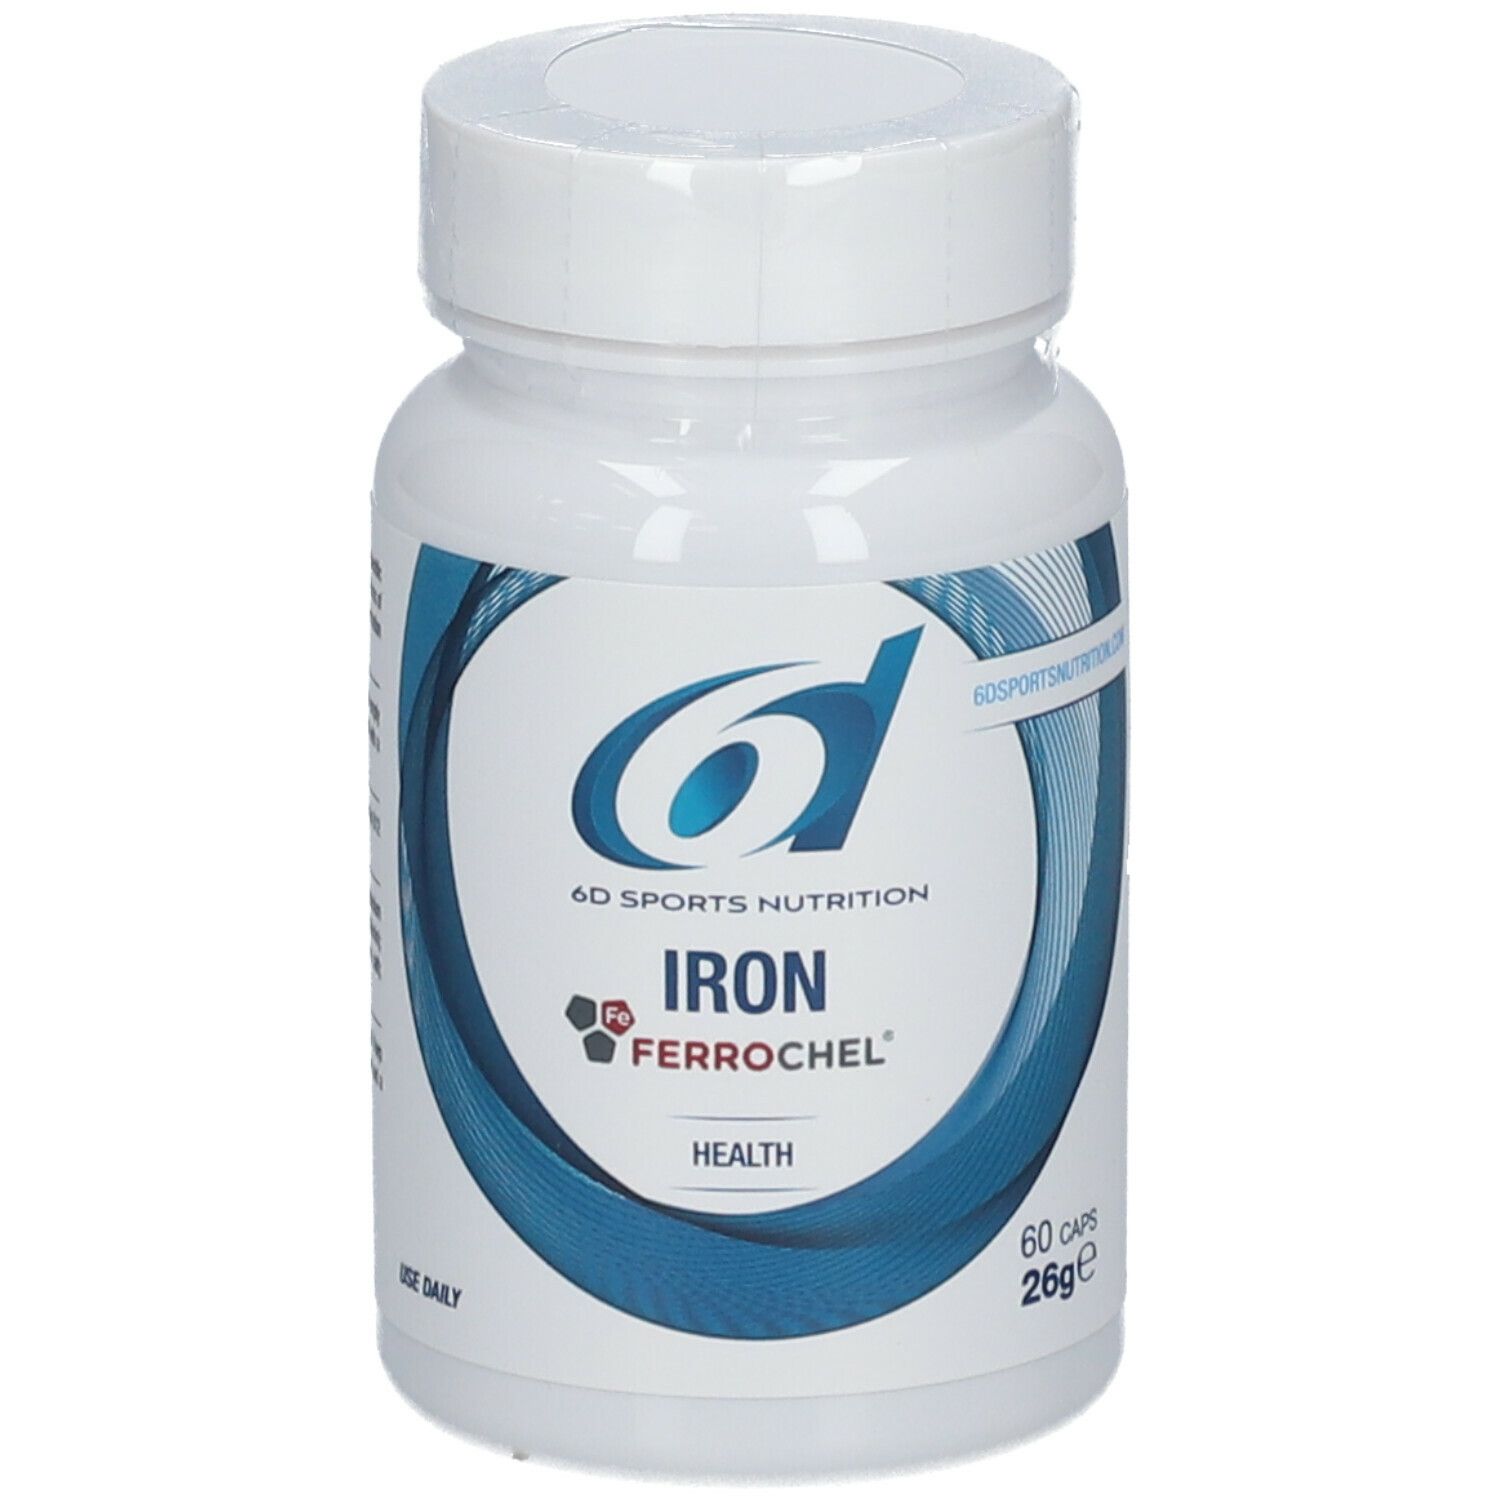 6D Sports Nutrition Iron Ferrochel®